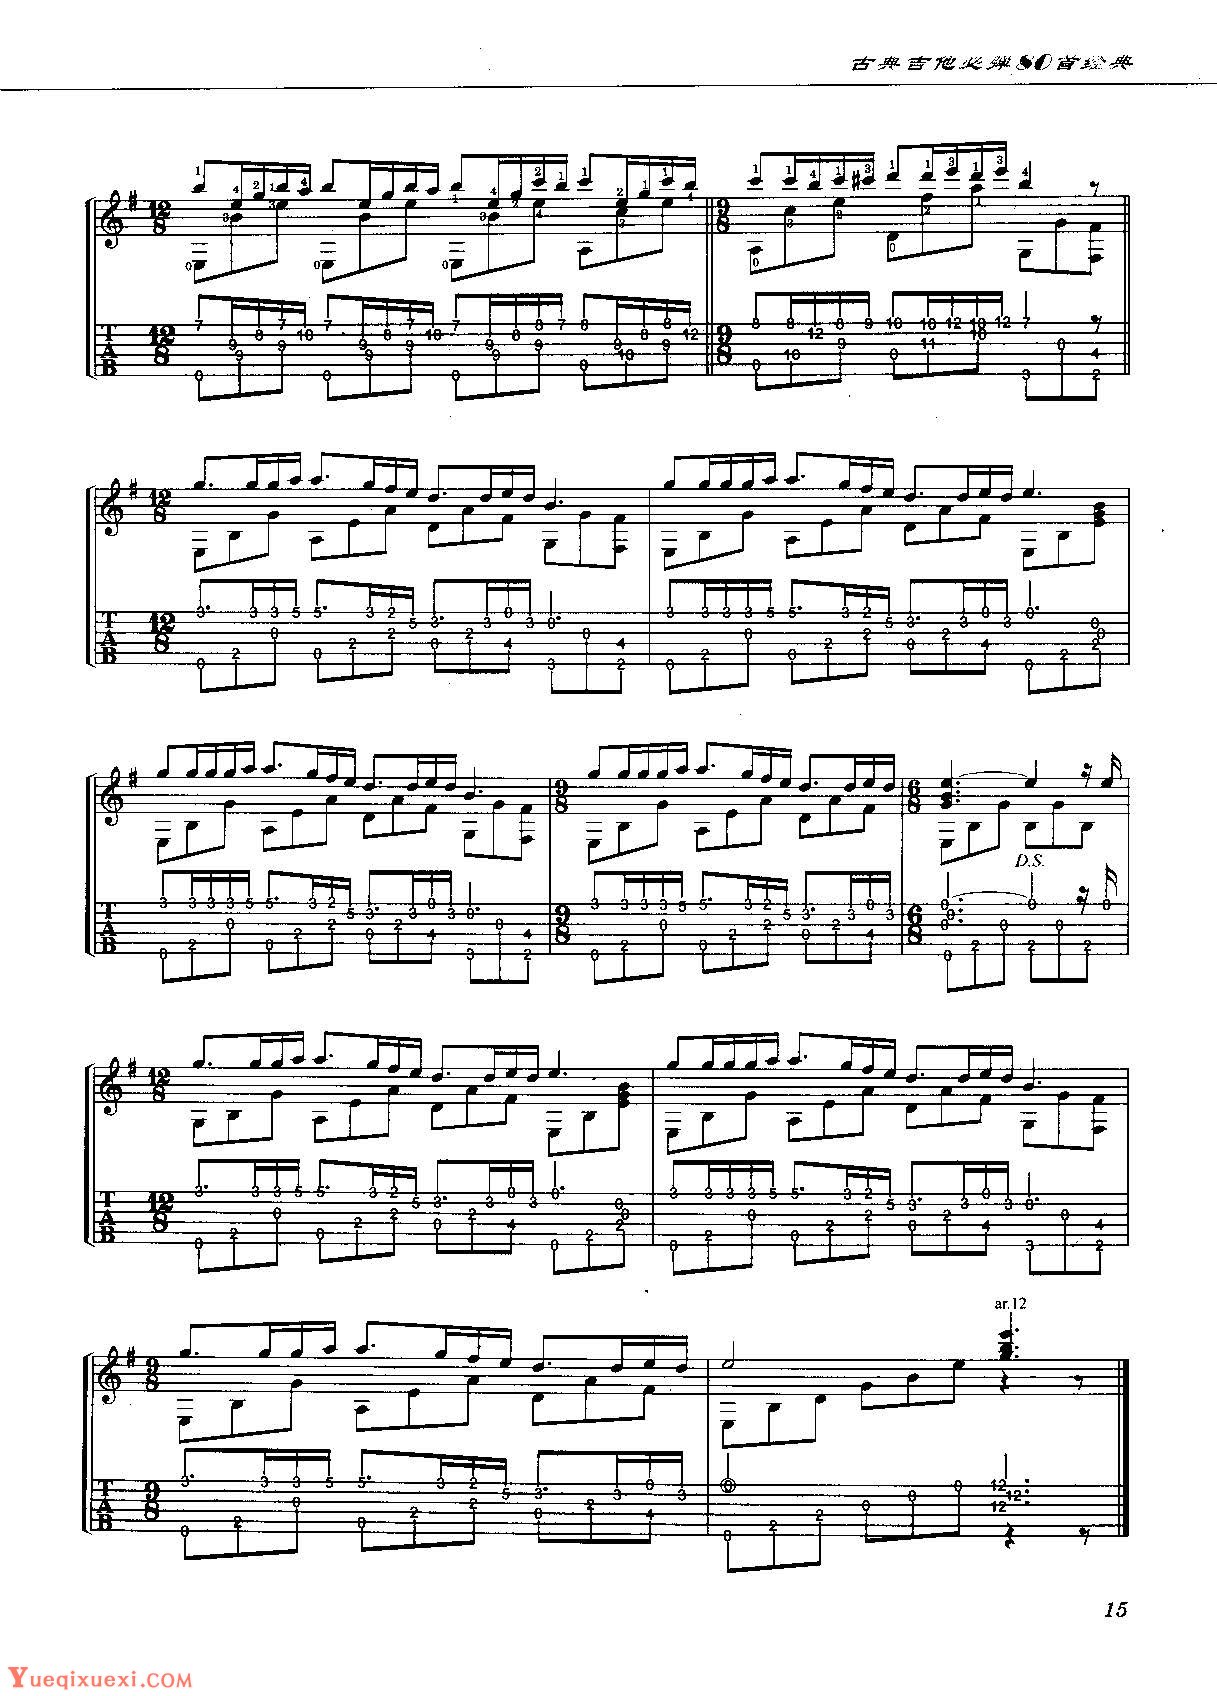 【古典吉他谱】Toccata And Fugue in D minor,BWV 565（简易版）[双形式版] - 哔哩哔哩